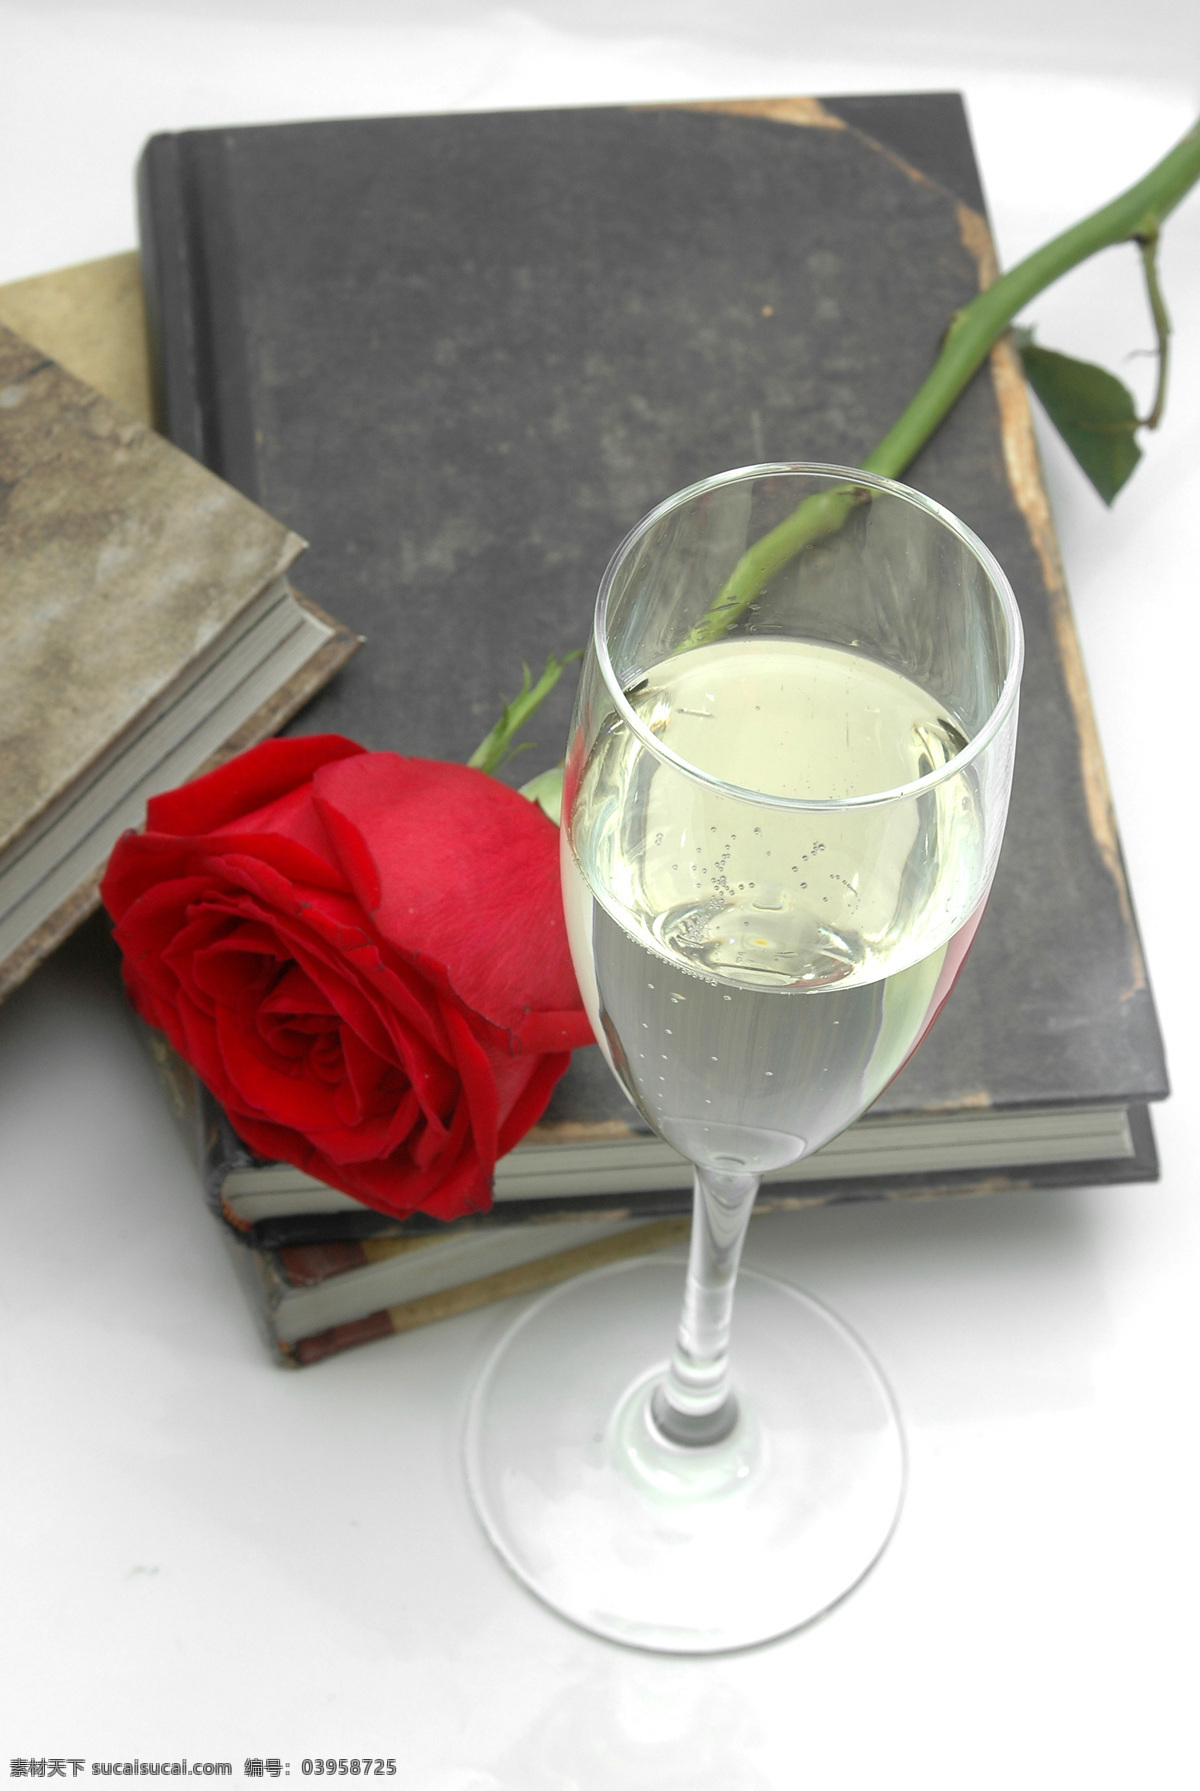 玫瑰花 书本 书与花 红玫瑰 酒杯 高脚杯 鲜花 花朵 百花争艳 花草 生物世界